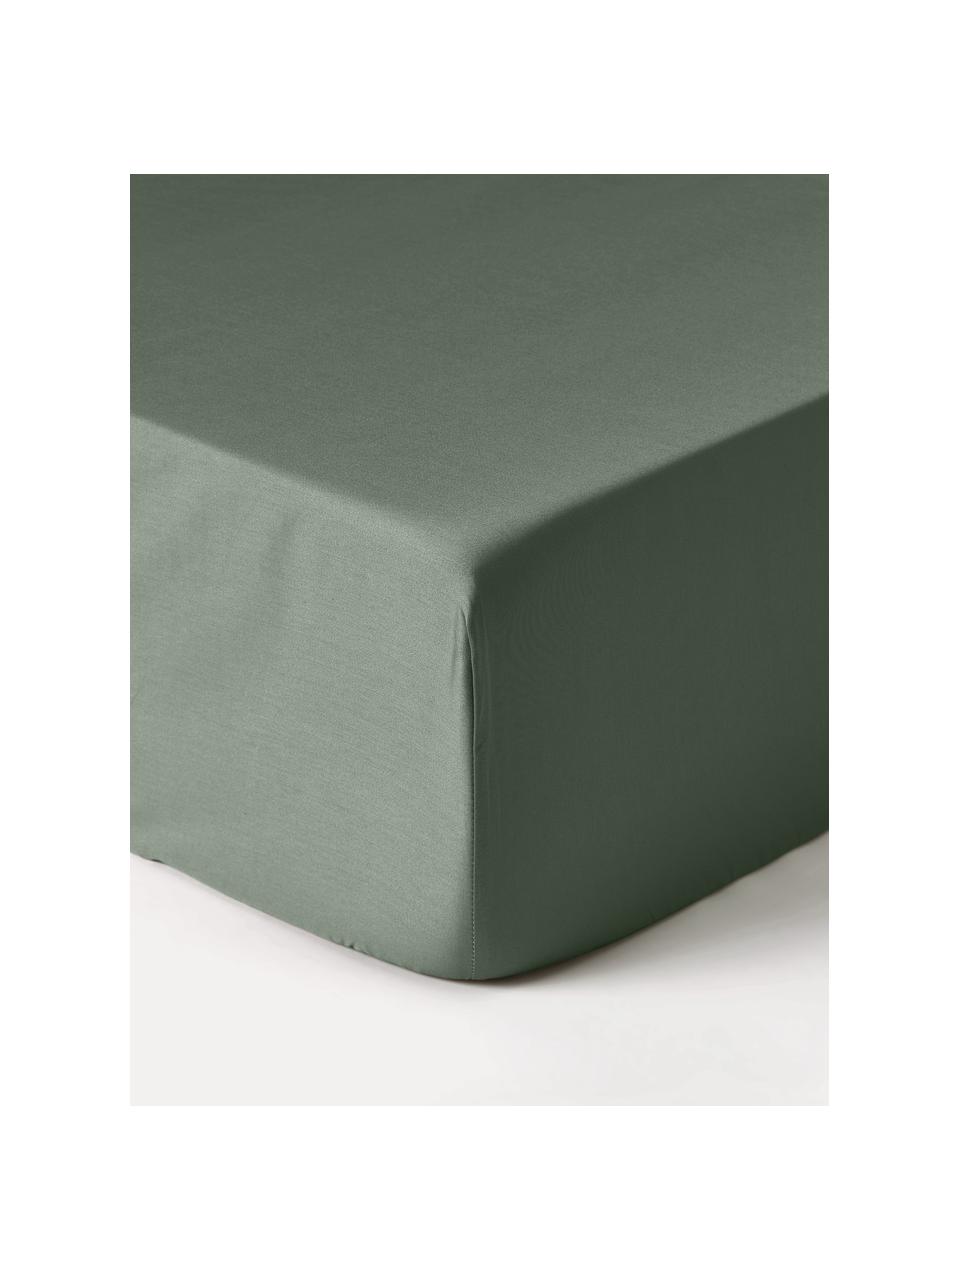 Sábana bajera de satén Premium, Verde oscuro, Cama 90 cm (90 x 200 x 35 cm)